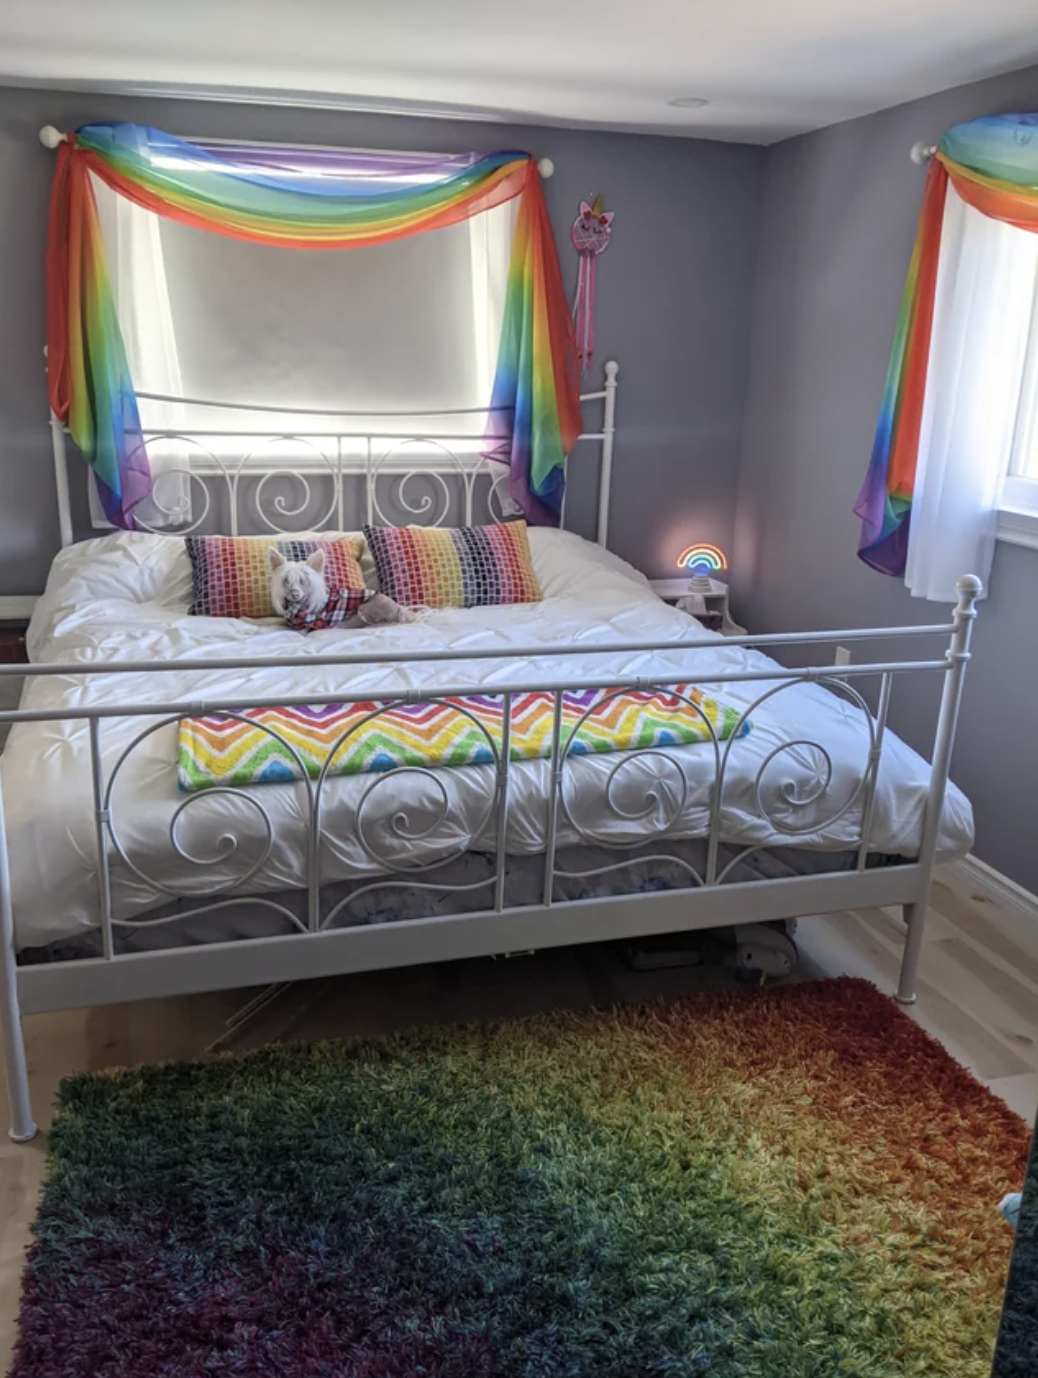 This rainbow-themed room includes rainbow curtains, a rainbow rug, and rainbow pillows